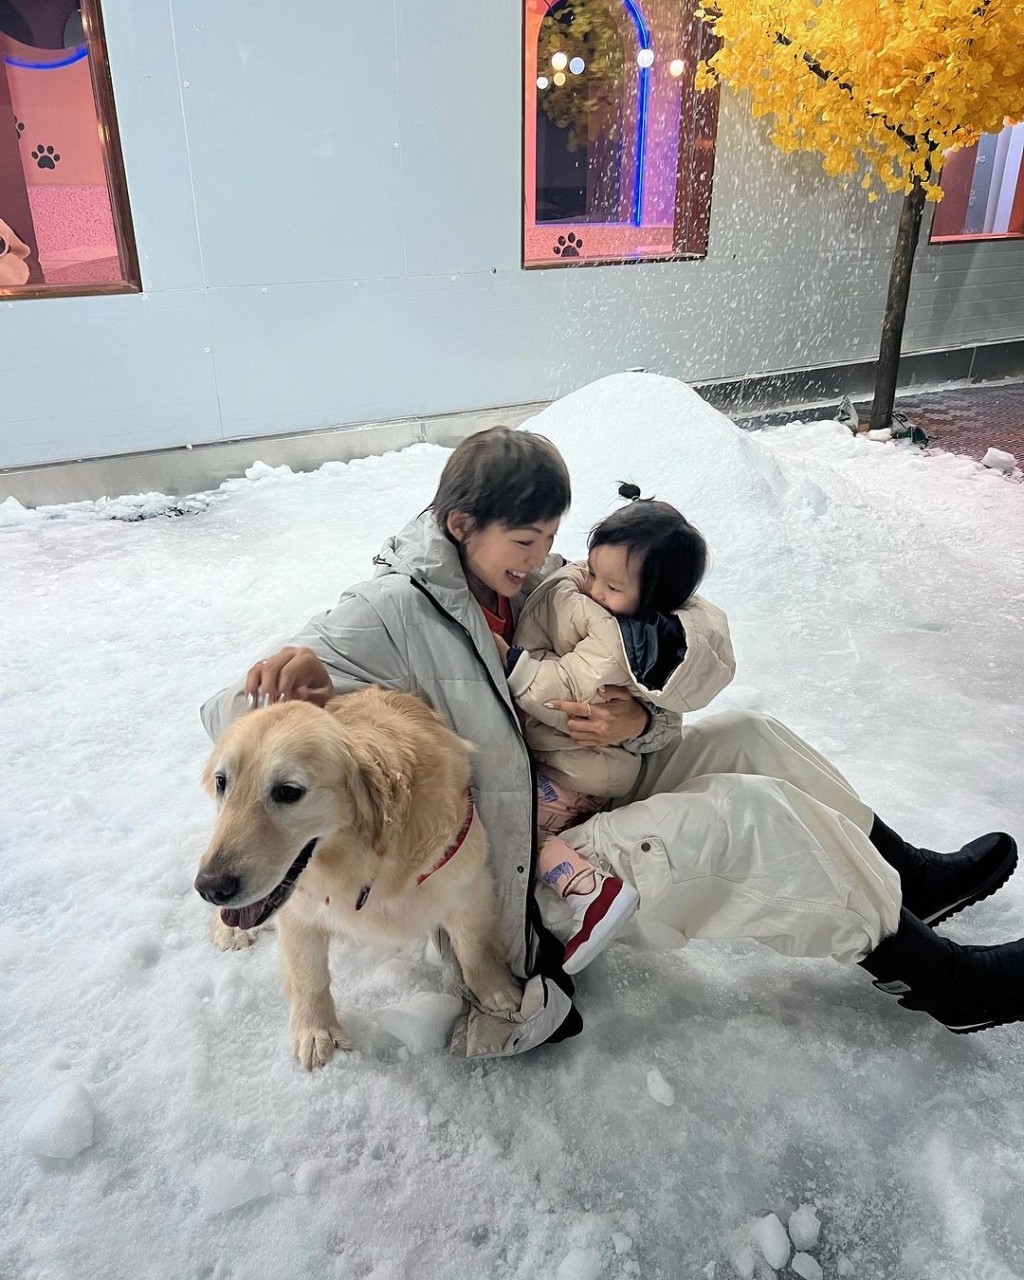 昨晚梁诺妍分享与囡囡Sir Face和爱犬Molly去玩雪的照片。